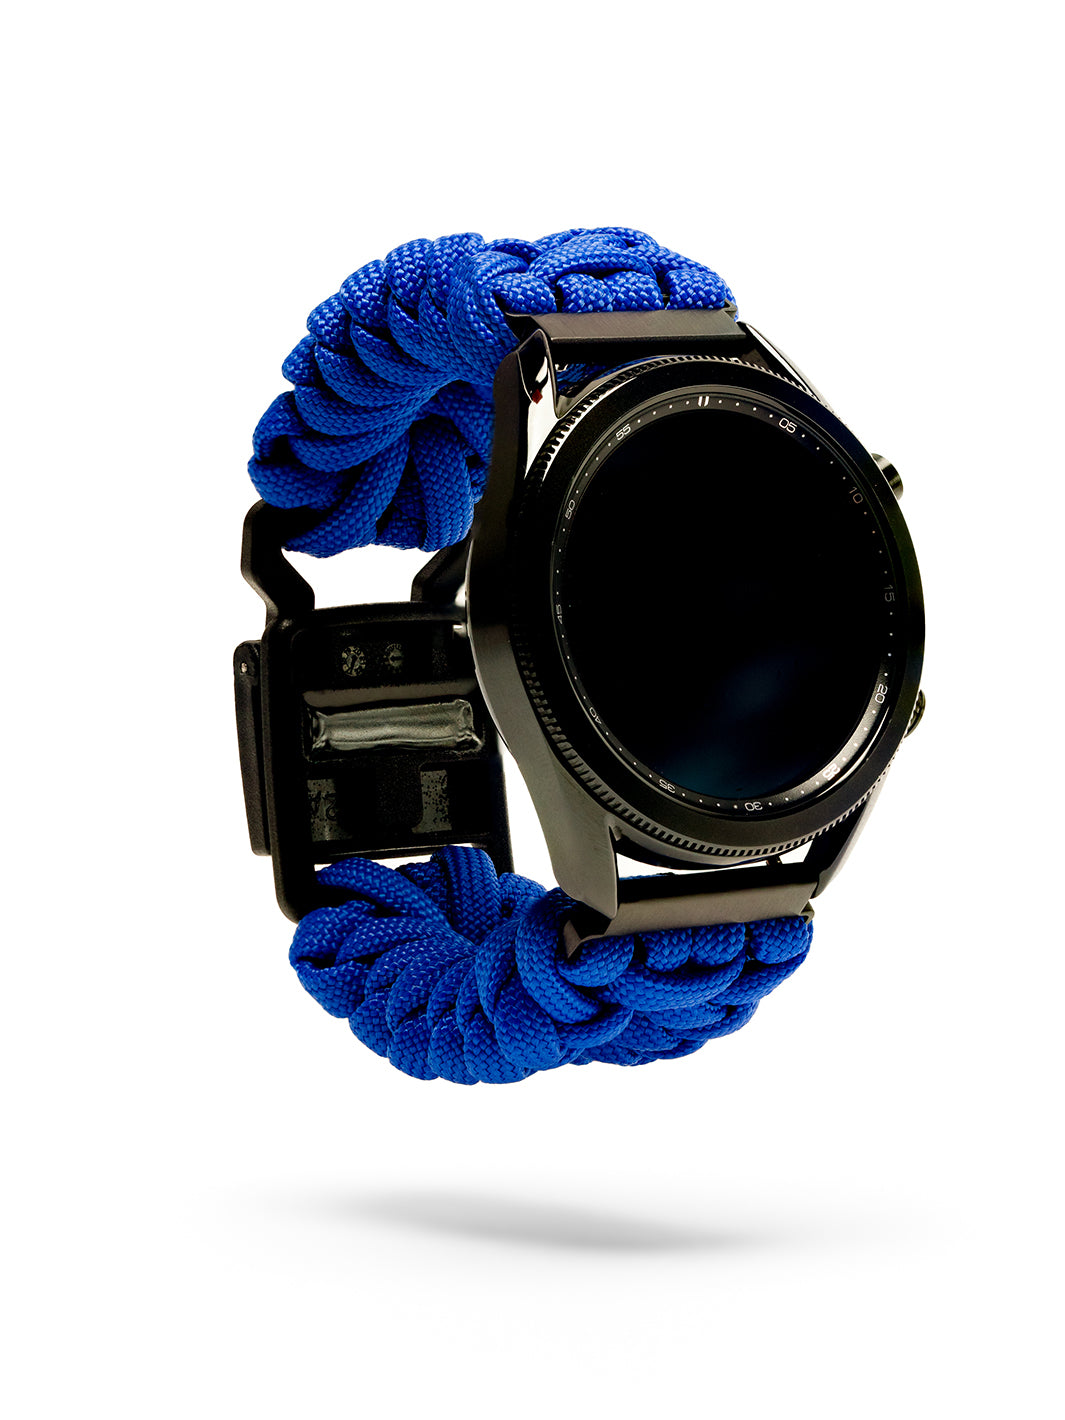 Samsung Galaxy Watch - Royal Blue